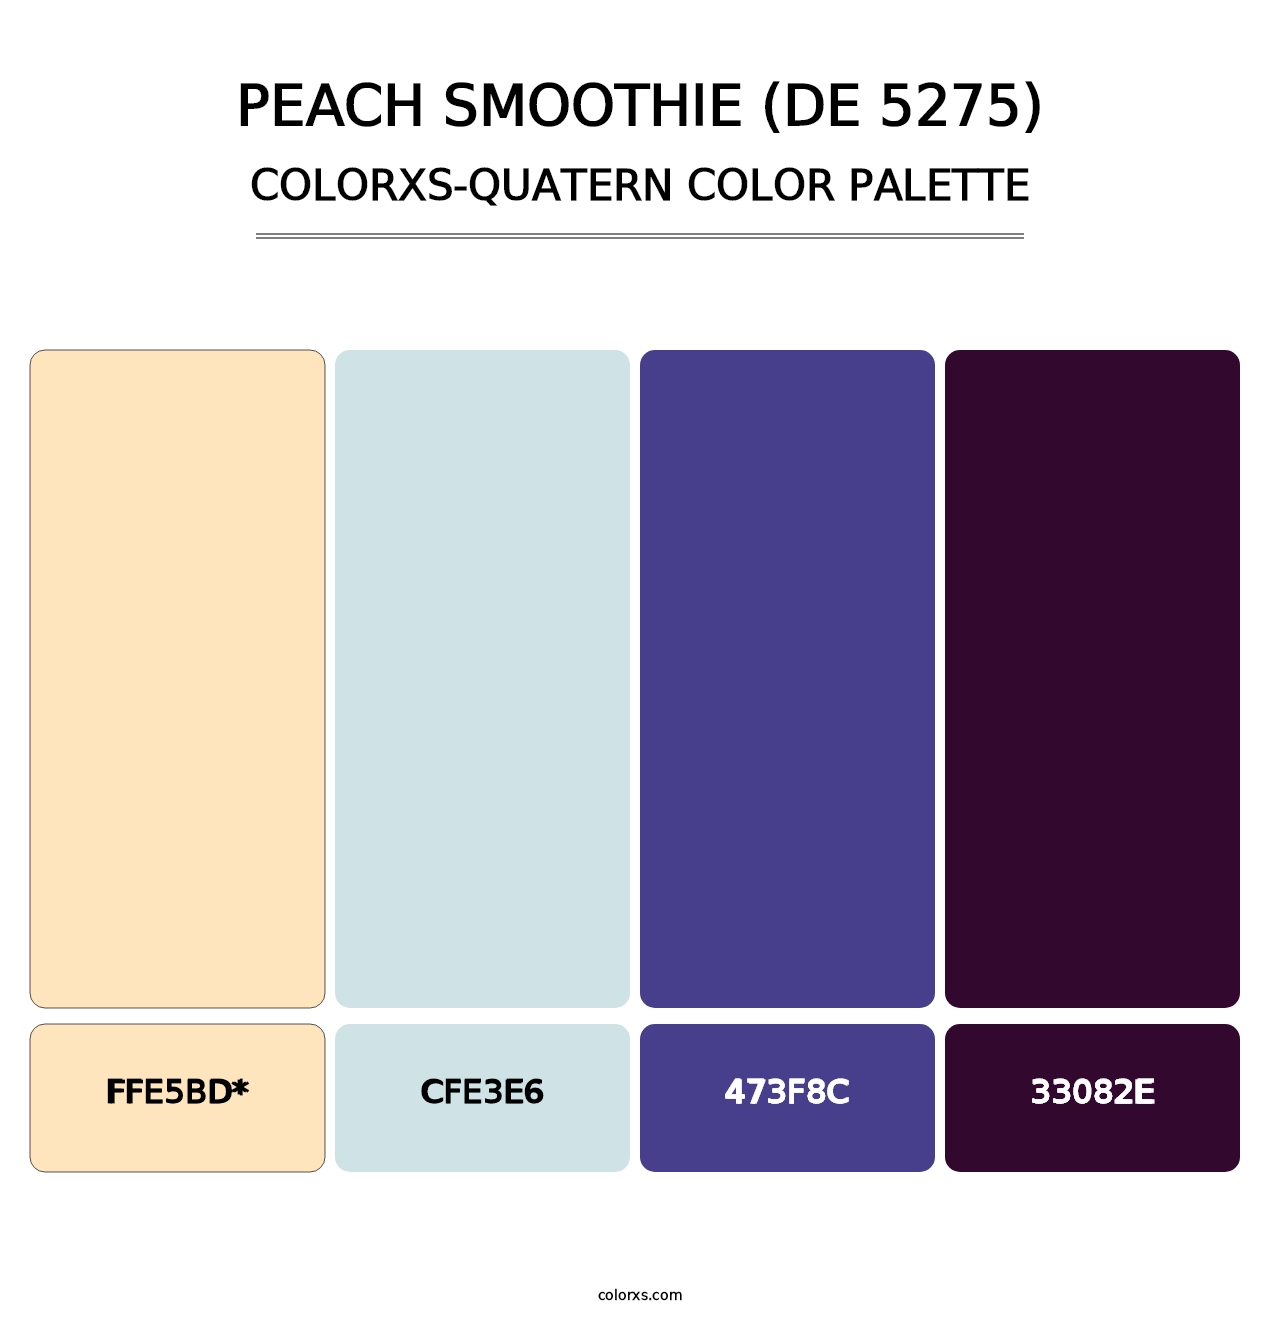 Peach Smoothie (DE 5275) - Colorxs Quatern Palette